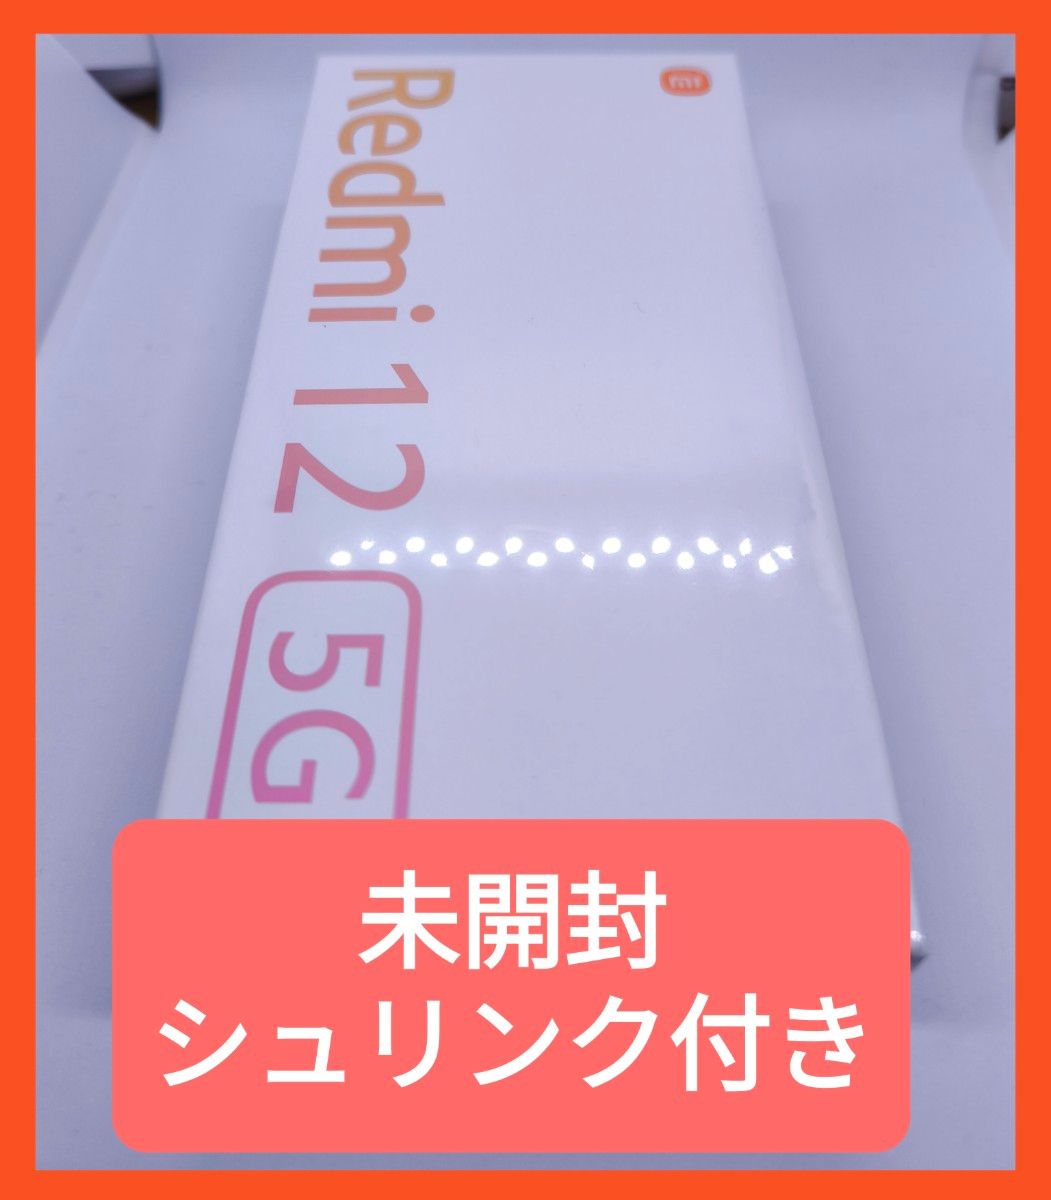 【新品未使用・シュリンク付き】Redmi 12 5G 6.8インチ メモリー4GB ストレージ128GB ミッドナイトブラック